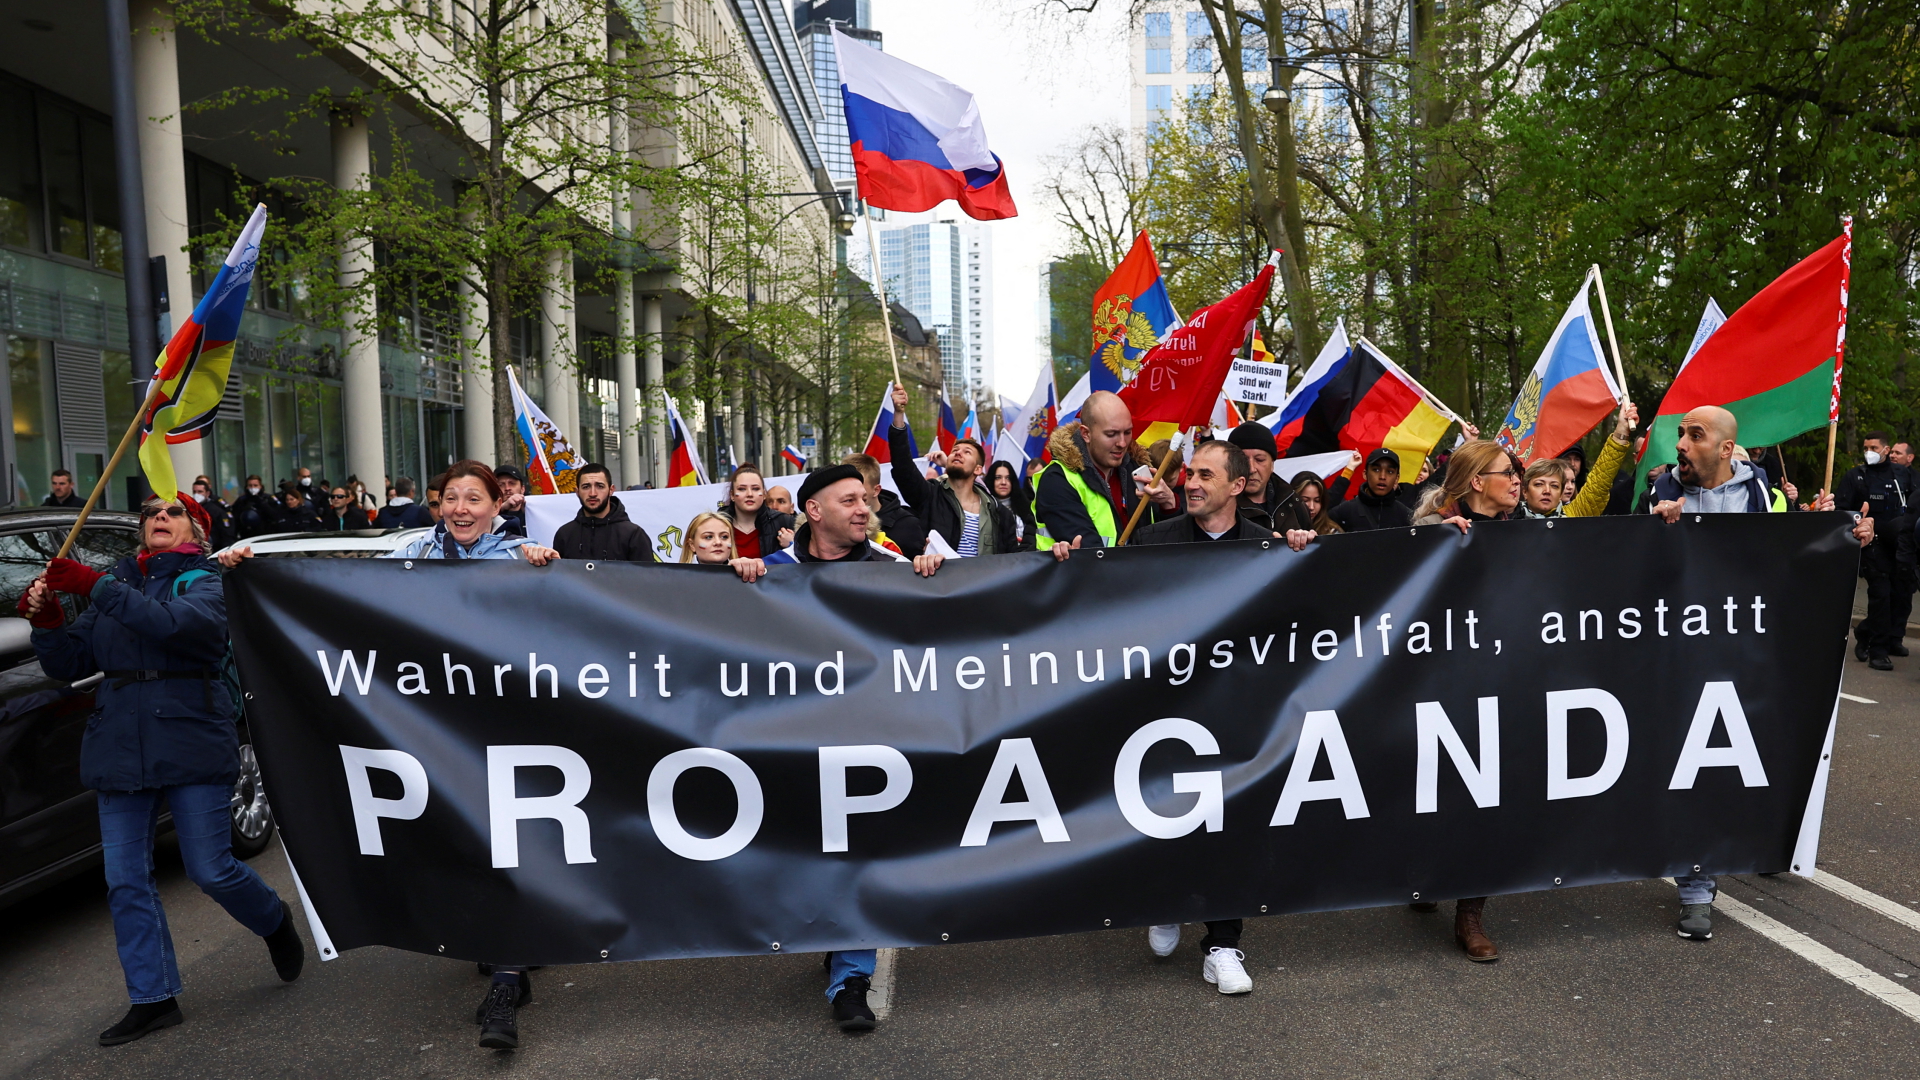 Teilnehmer einer russischen Unterstützerdemonstration tragen ein Transparent, auf dem steht "Wahrheit und Meinungsvielfalt anstatt Propagand